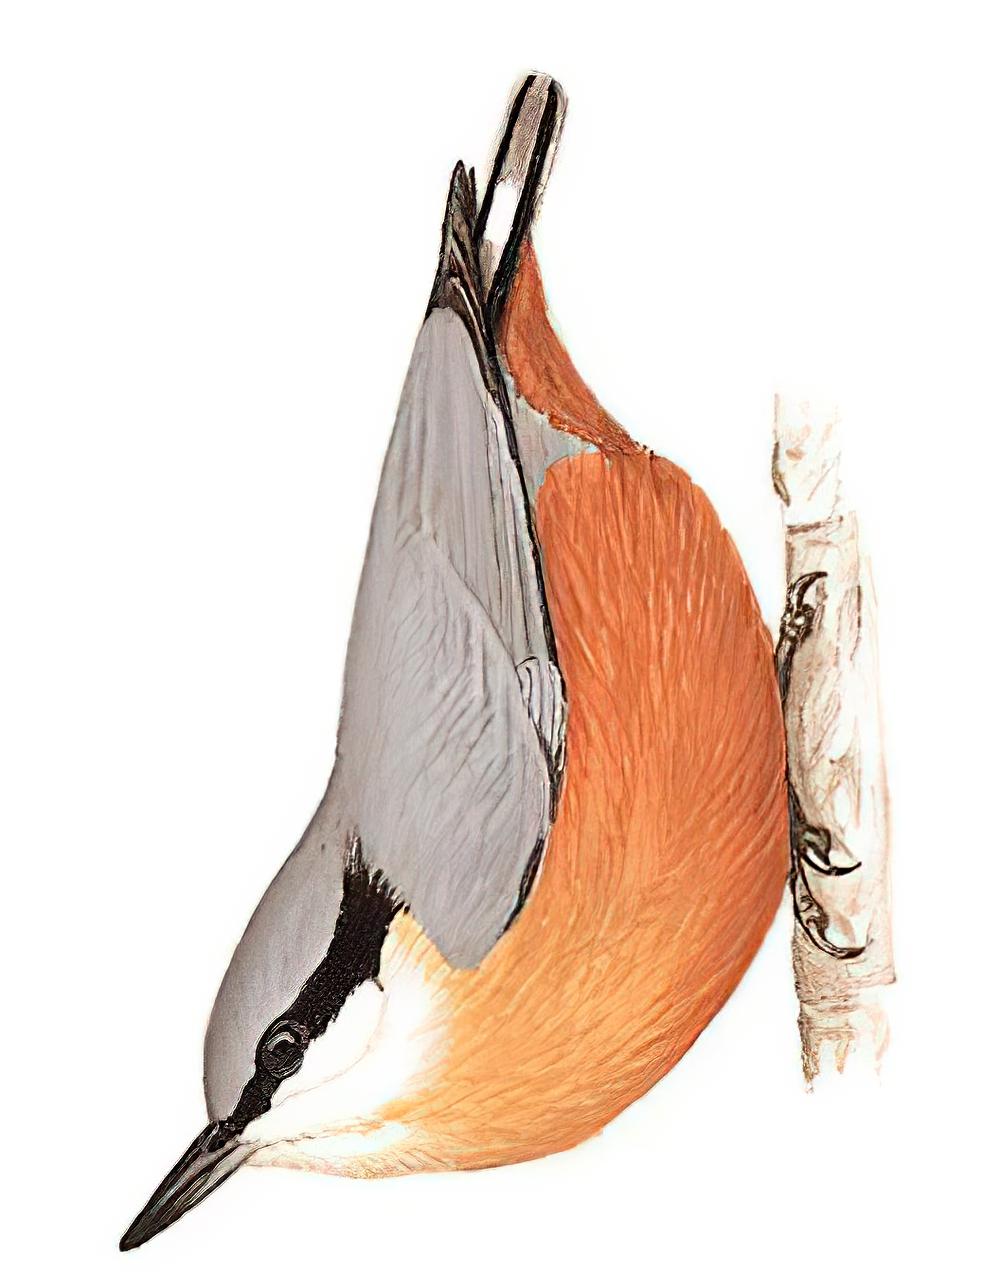 白尾䴓 / White-tailed Nuthatch / Sitta himalayensis